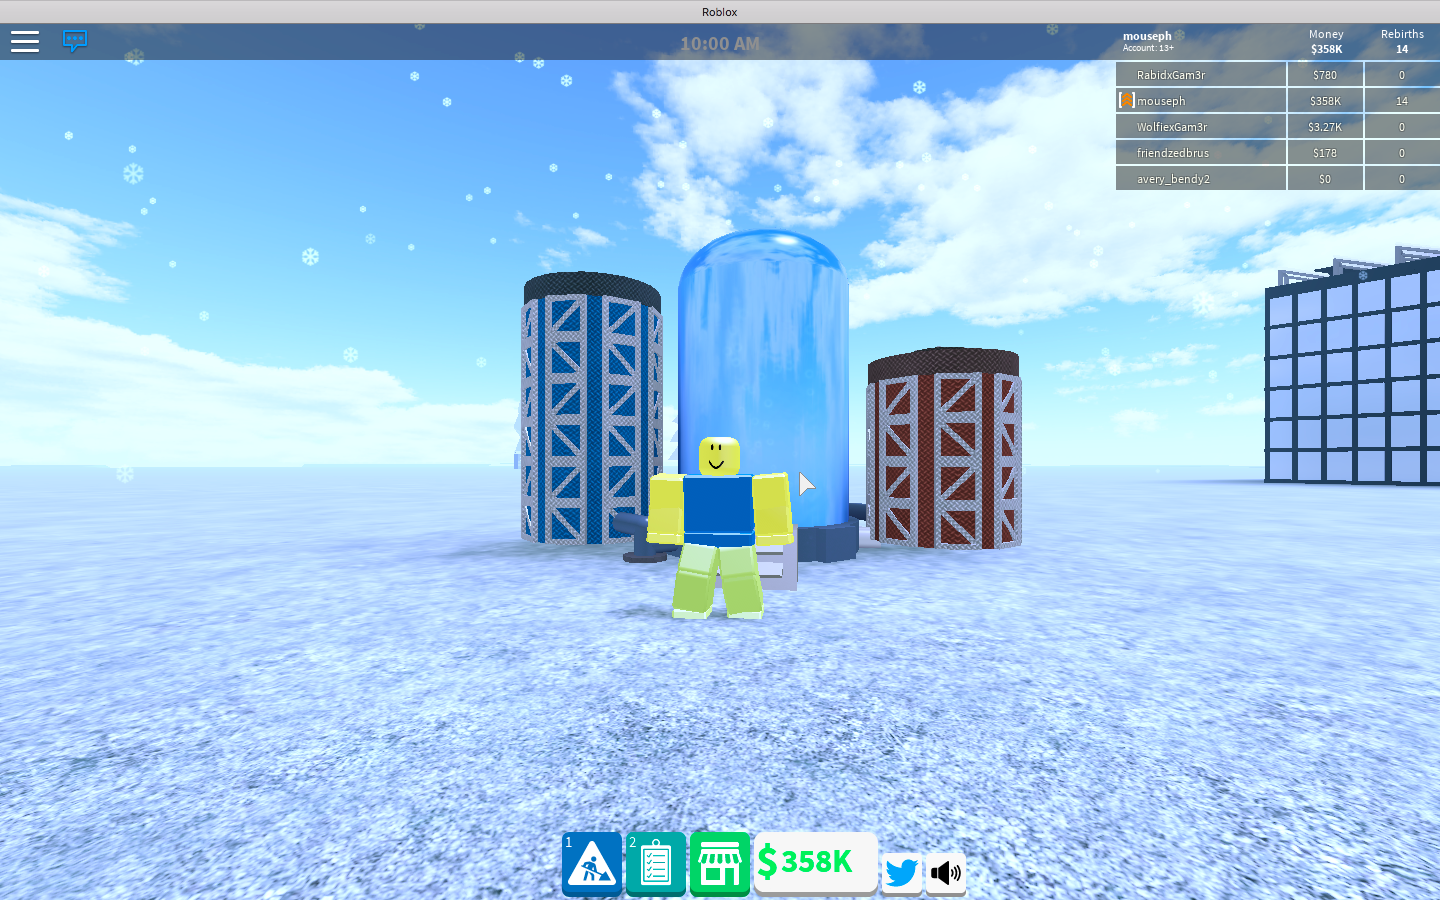 Hydrolyzer L3 Roblox Gas Station Simulator Wiki Fandom - 3 am the game roblox